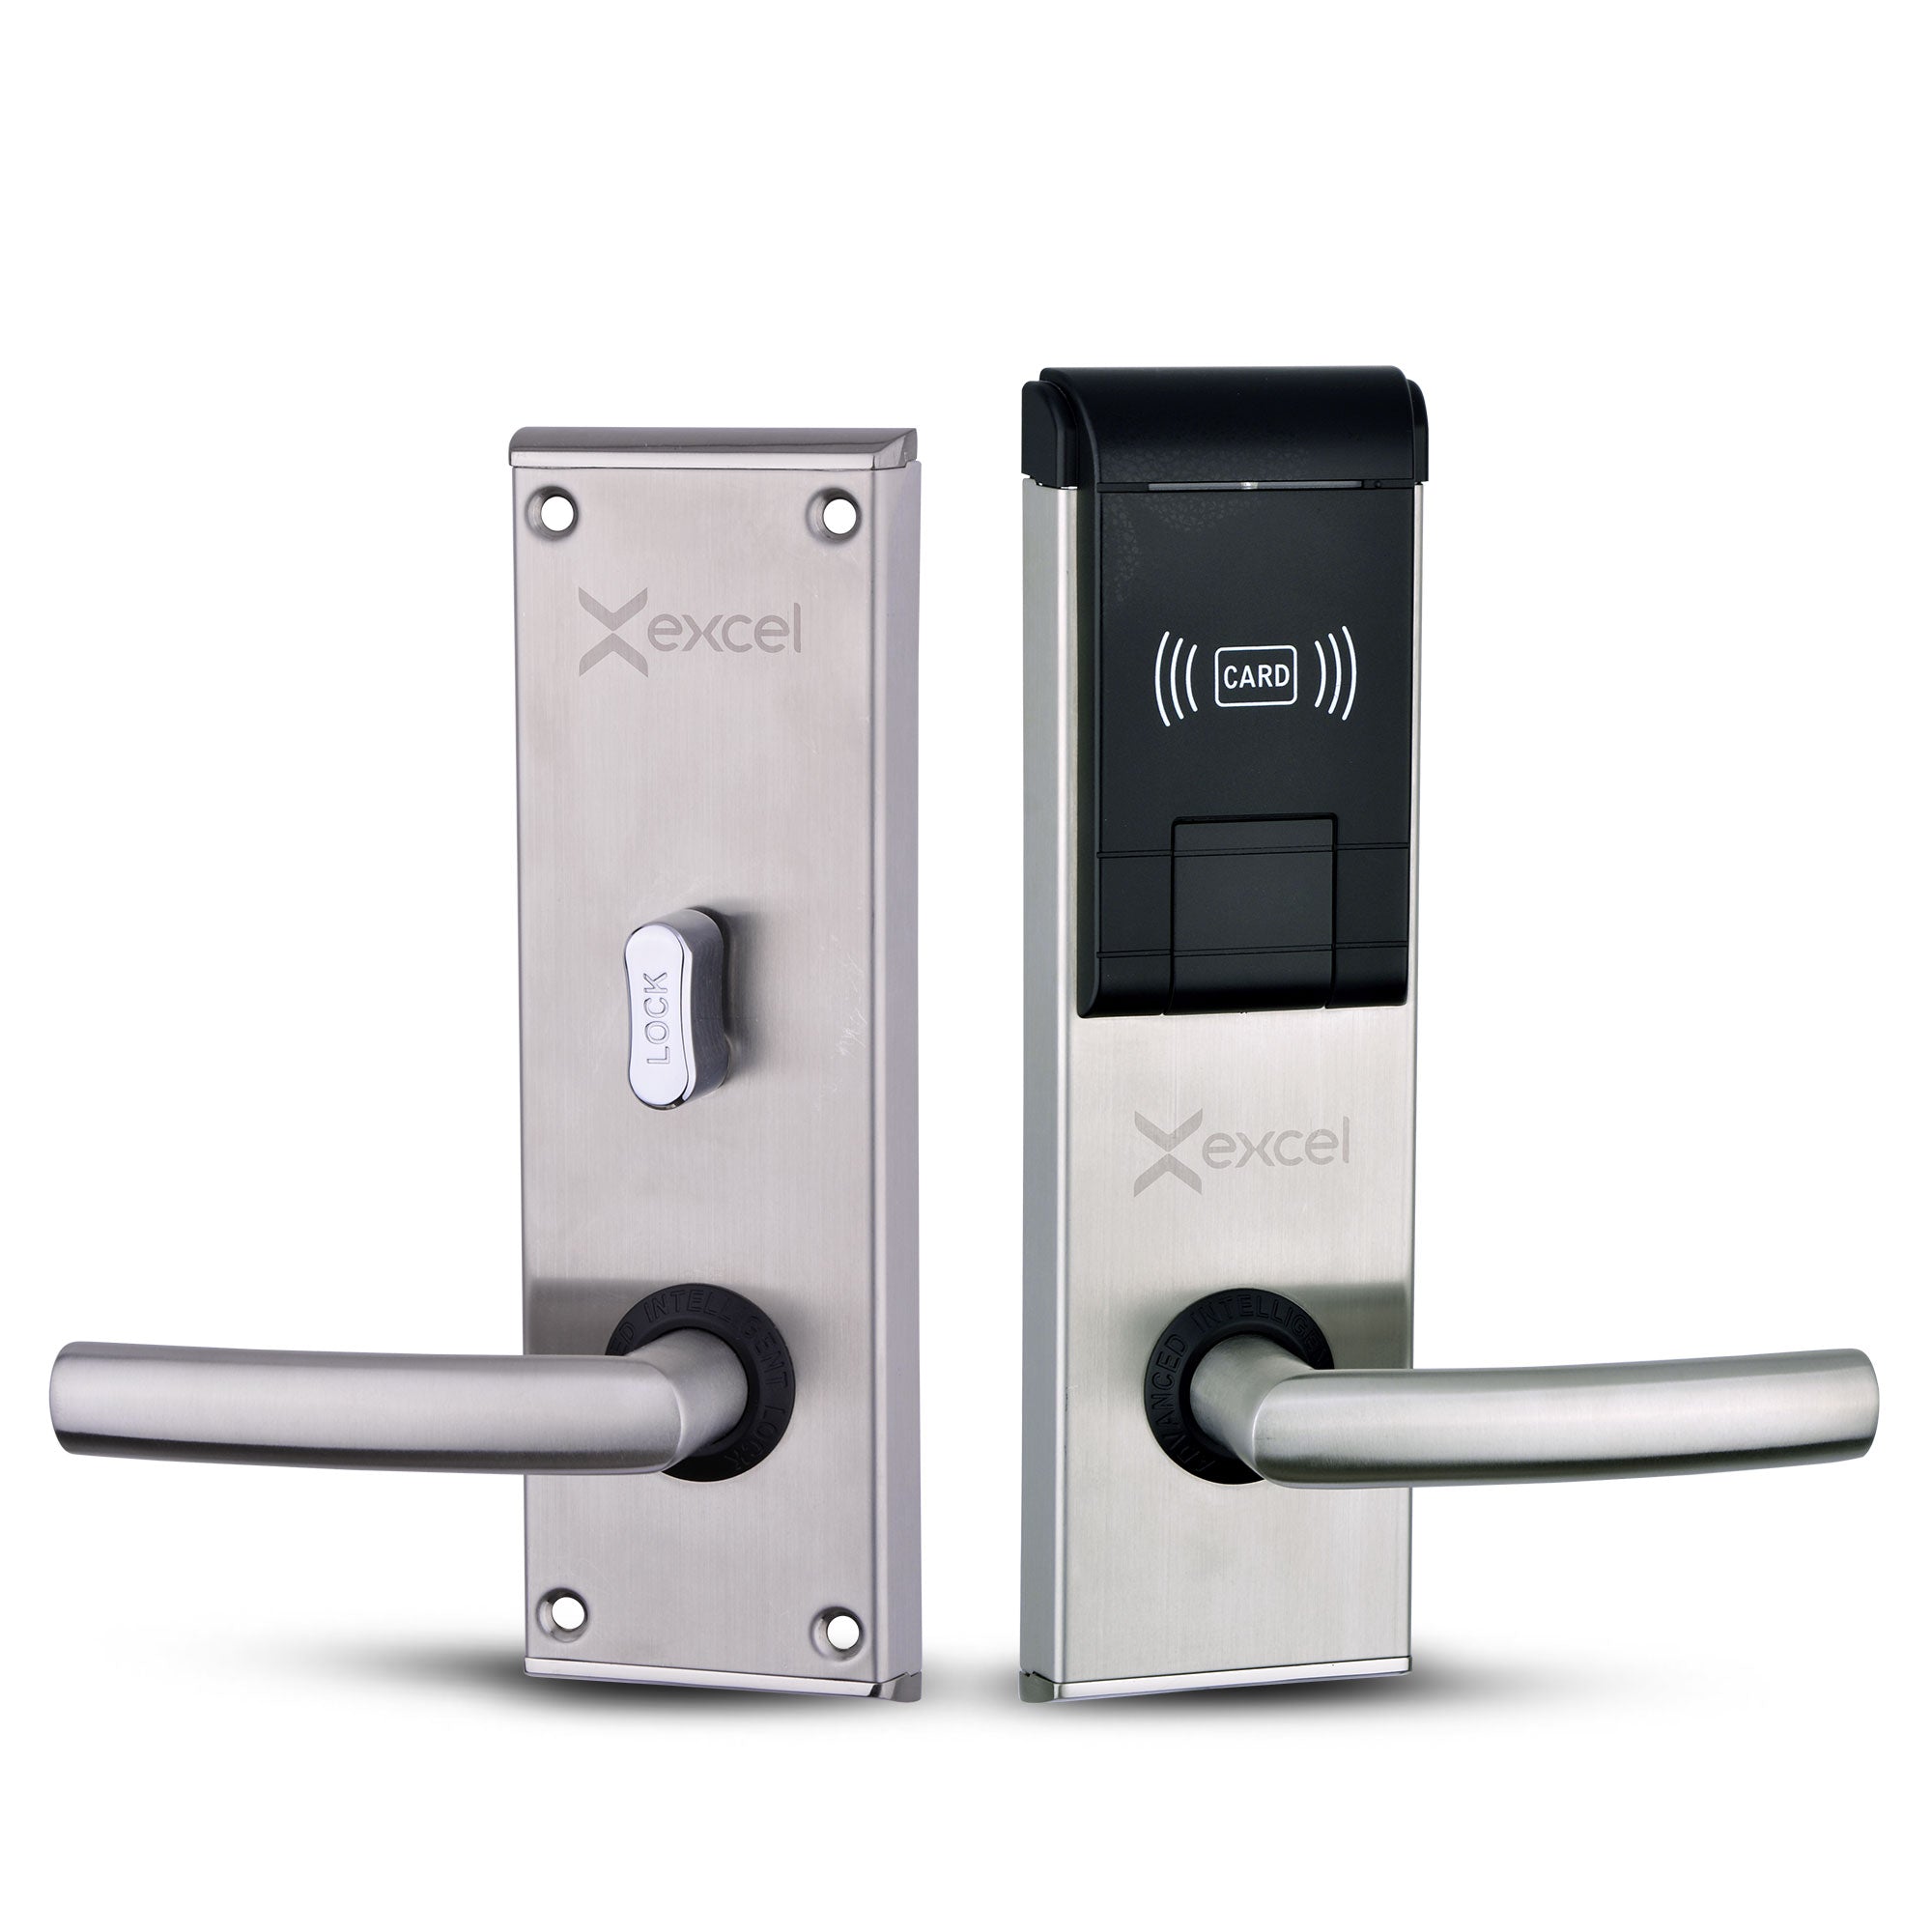 Cerradura con tarjeta para hoteles módulo interior y exterior marca Excel Digital Doorlock modelo Excel 930